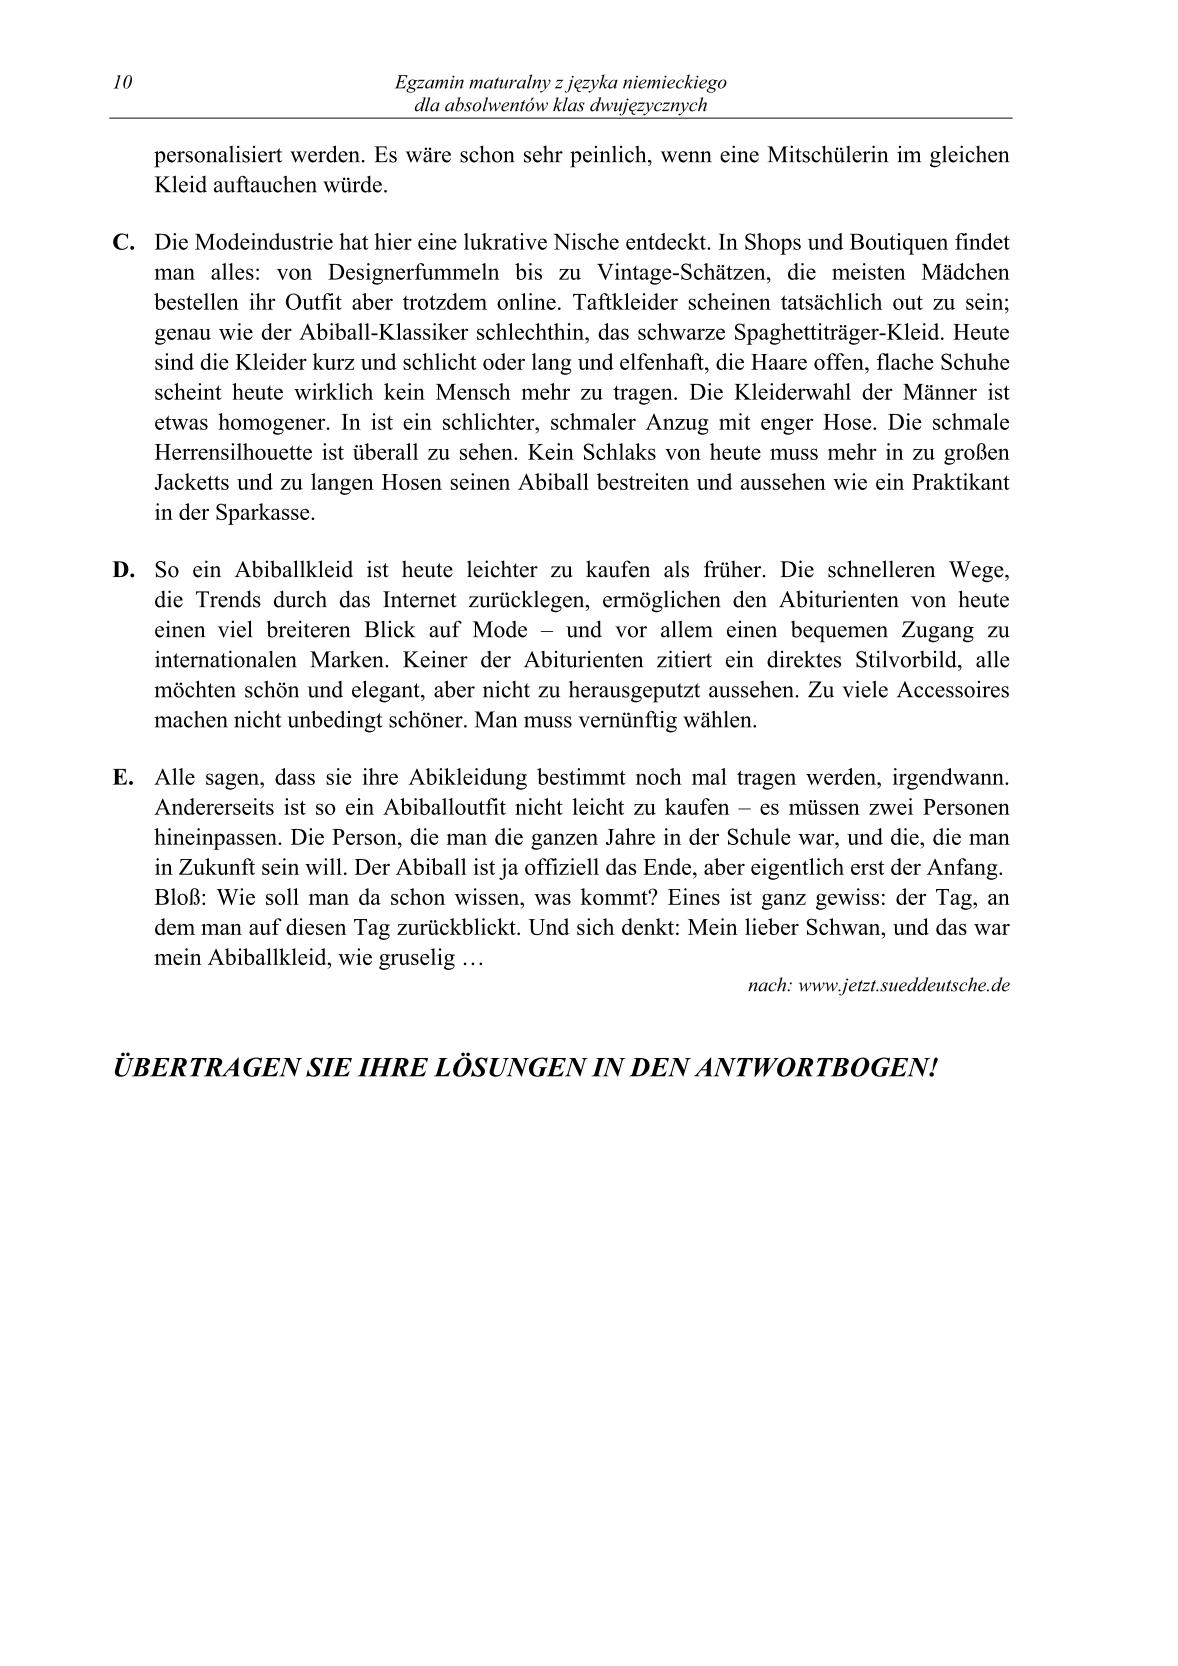 pytania-jezyk-niemiecki-dla-absolwentow-klas-dwujezycznych-matura-2014-str.10